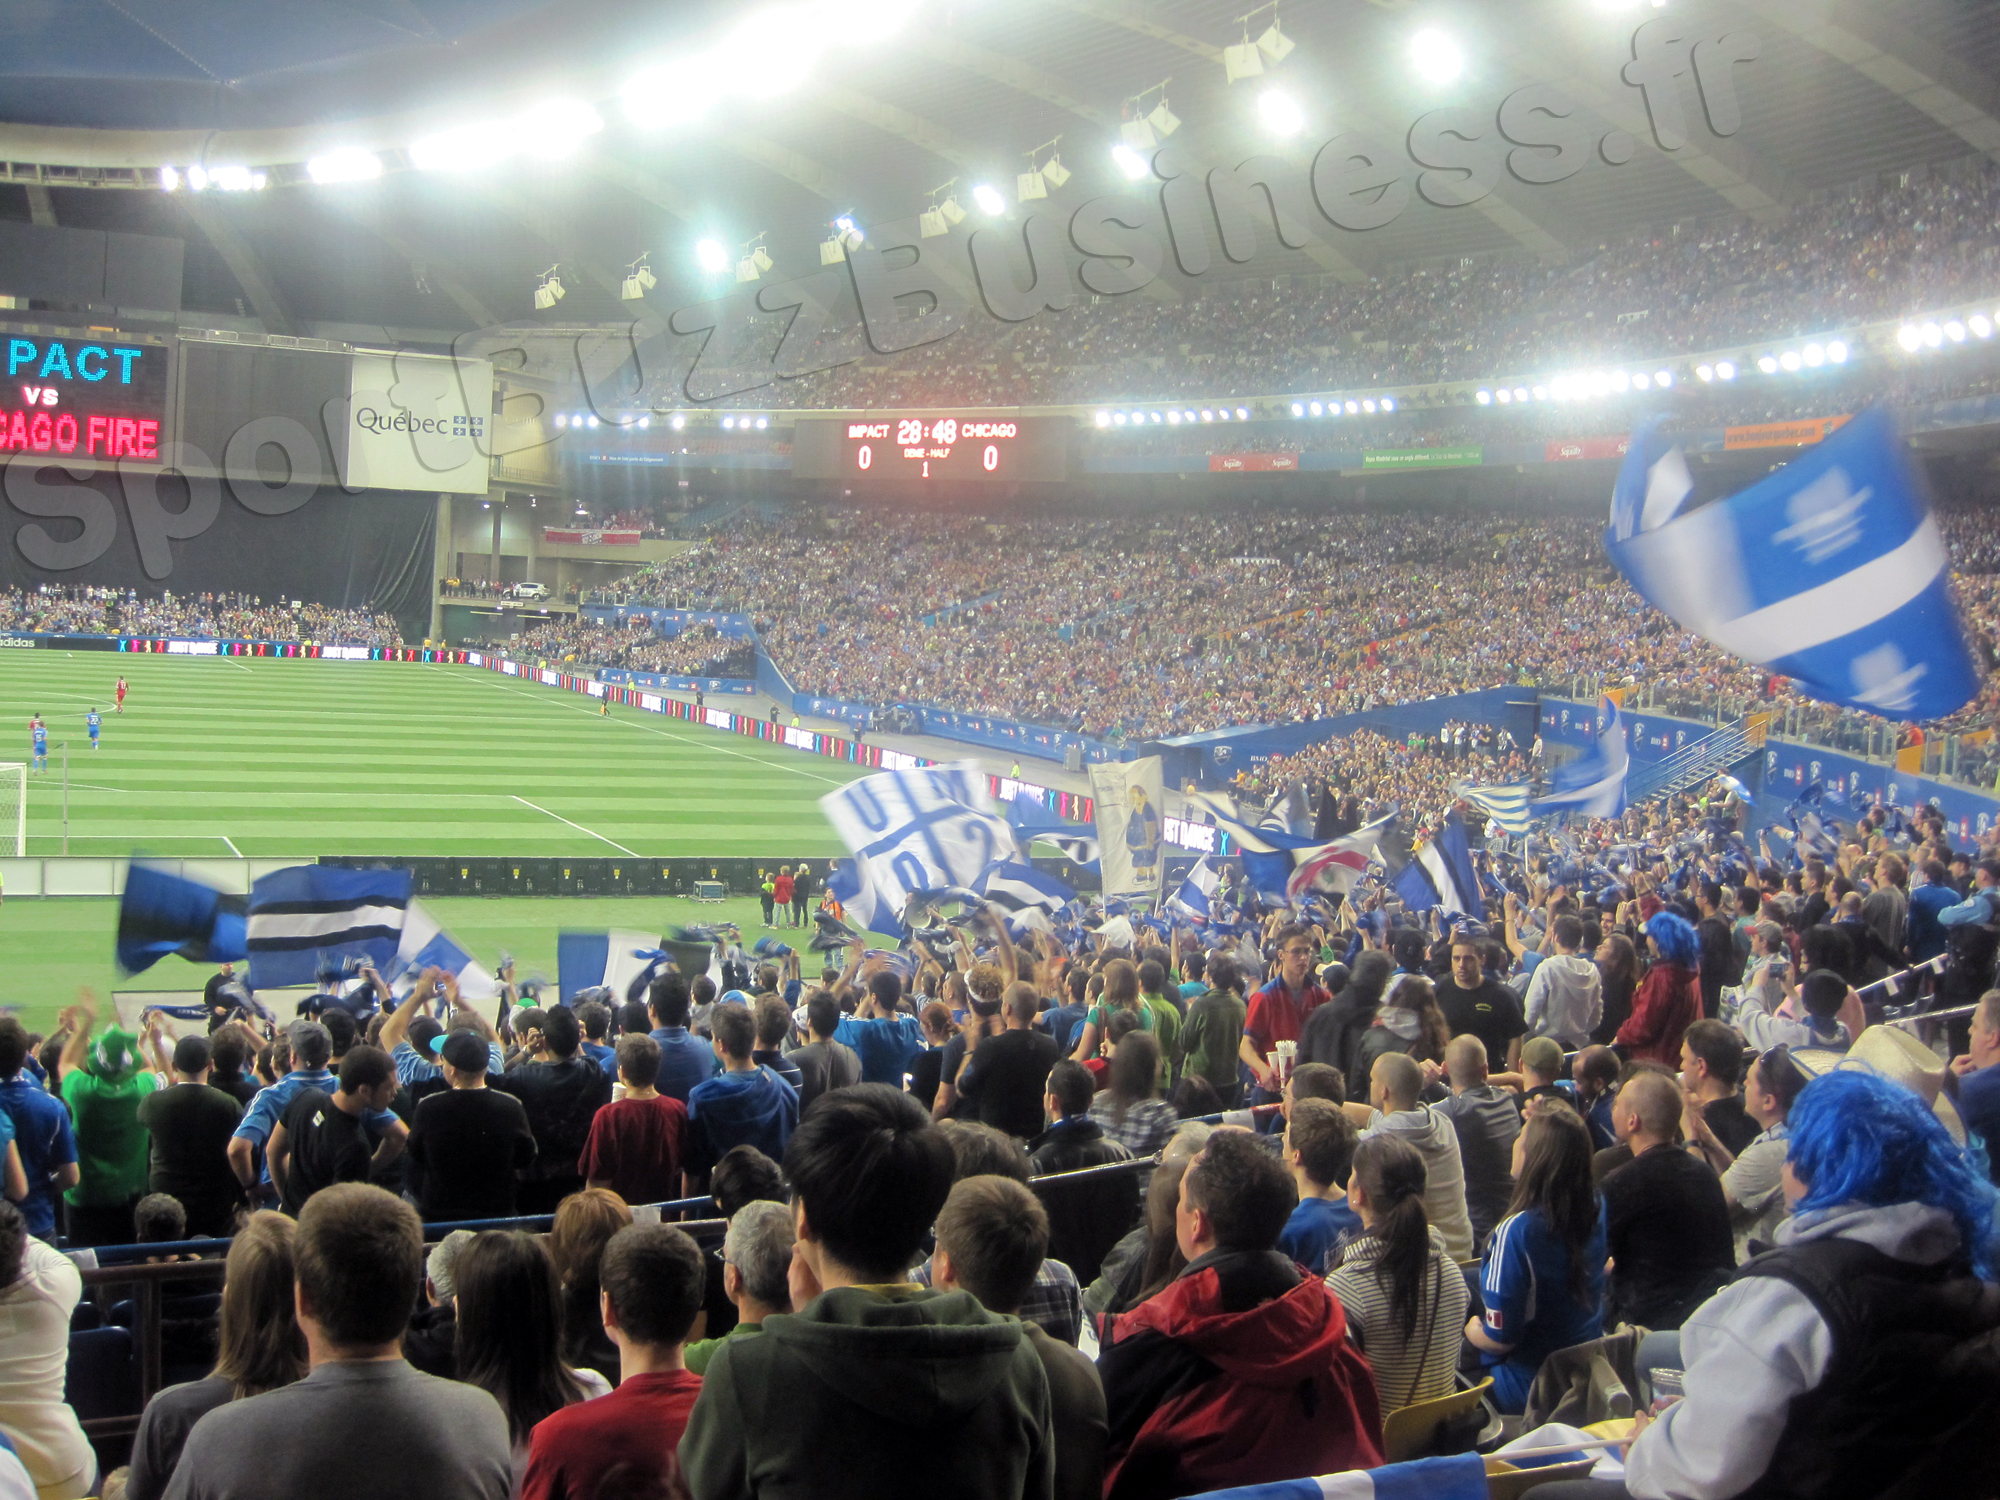 La MLS est arrivée à Montréal avec un record d’affluence (reportage photos)